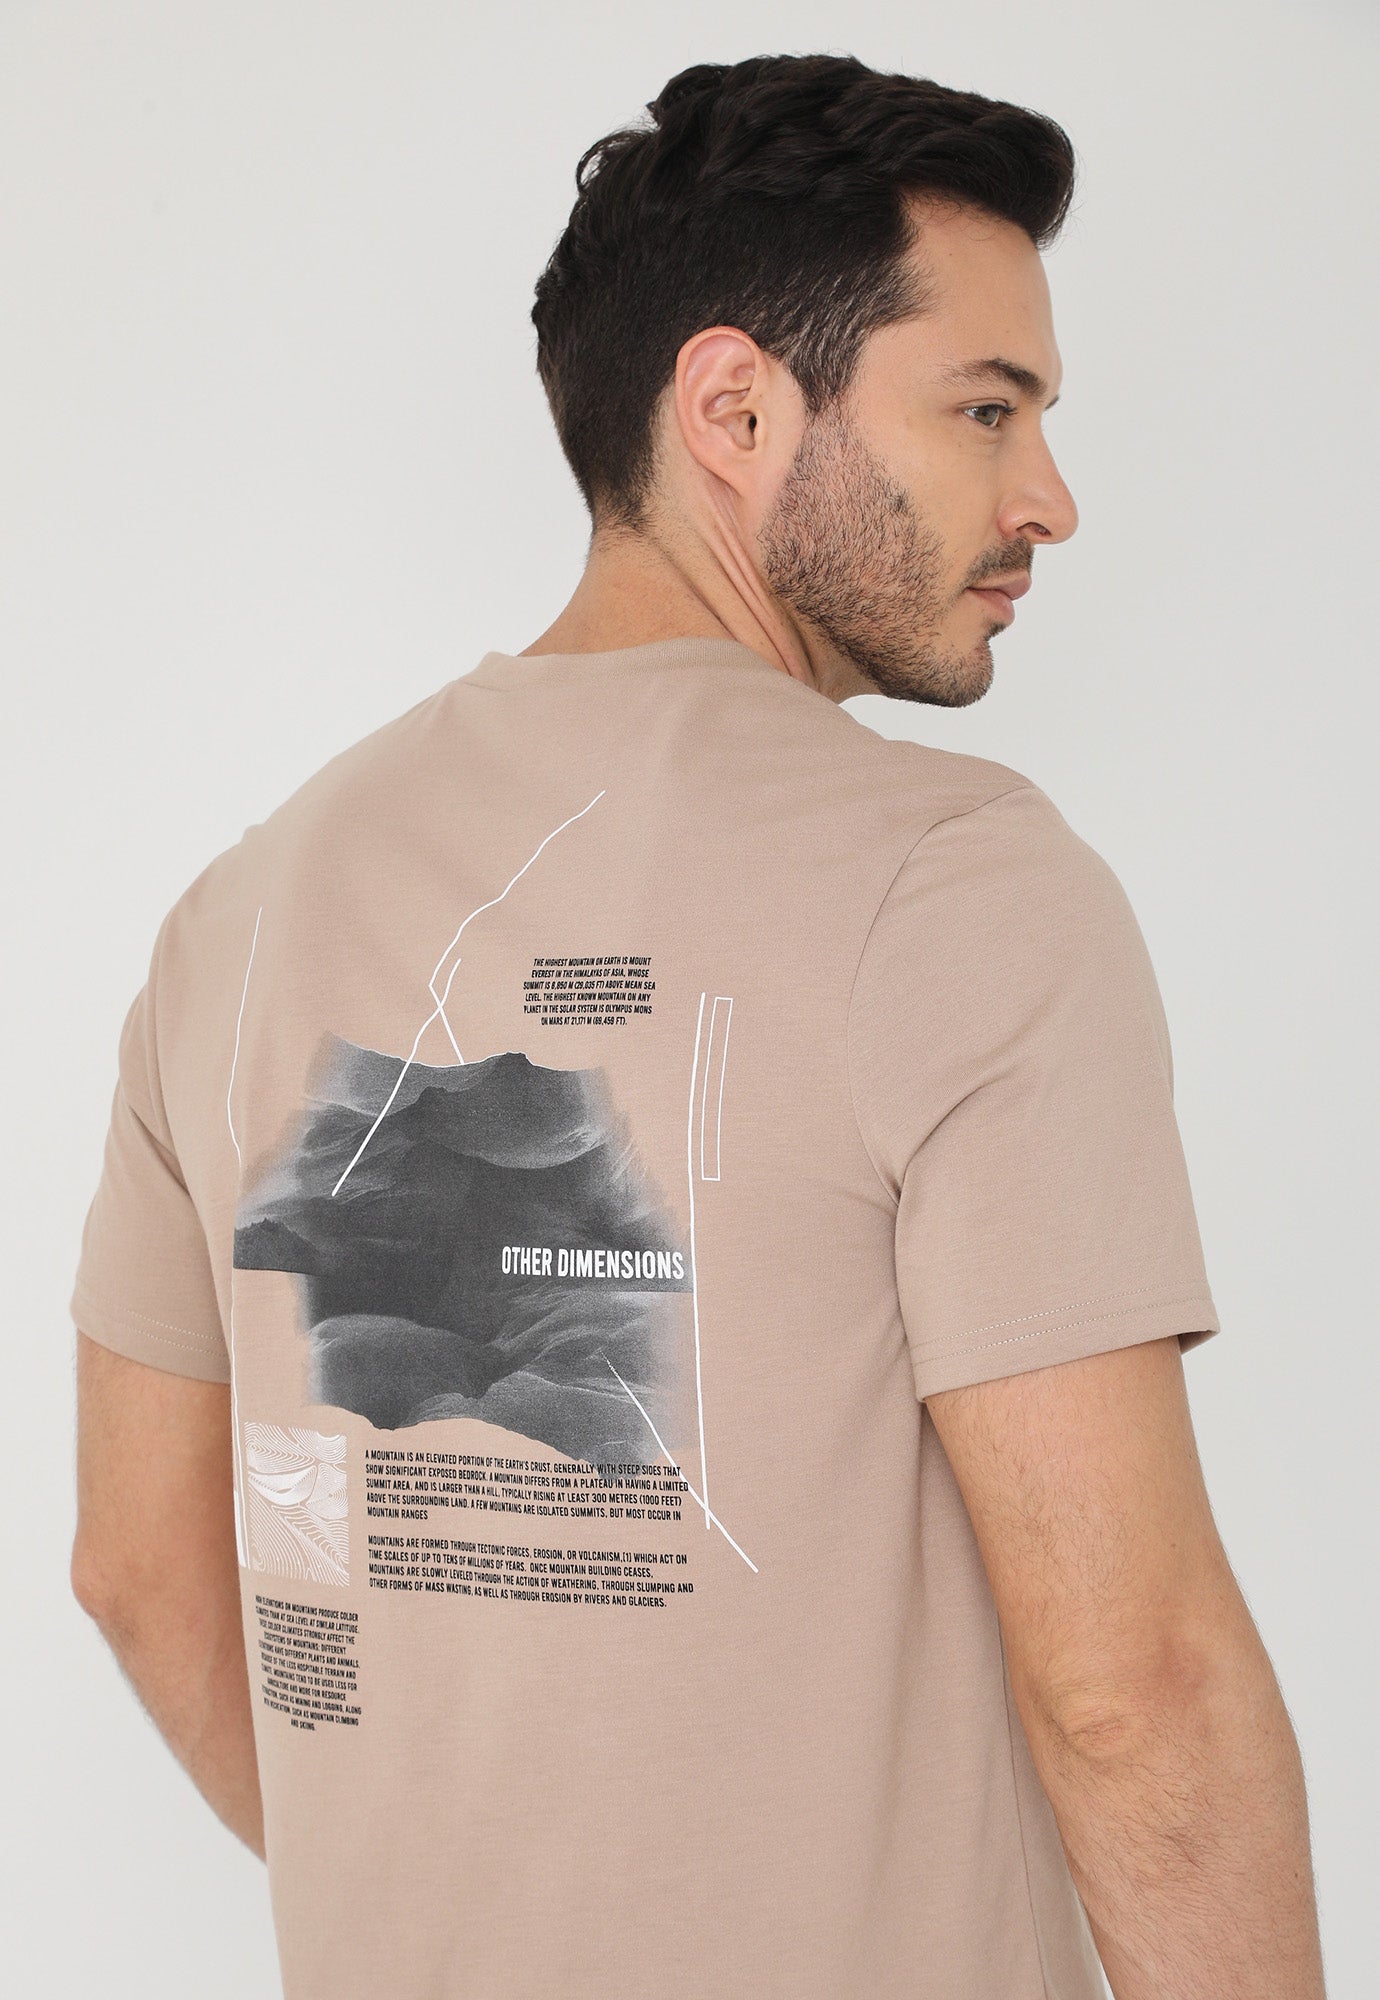 Camiseta café manga corta, estampado frontal y cuello en v para hombre